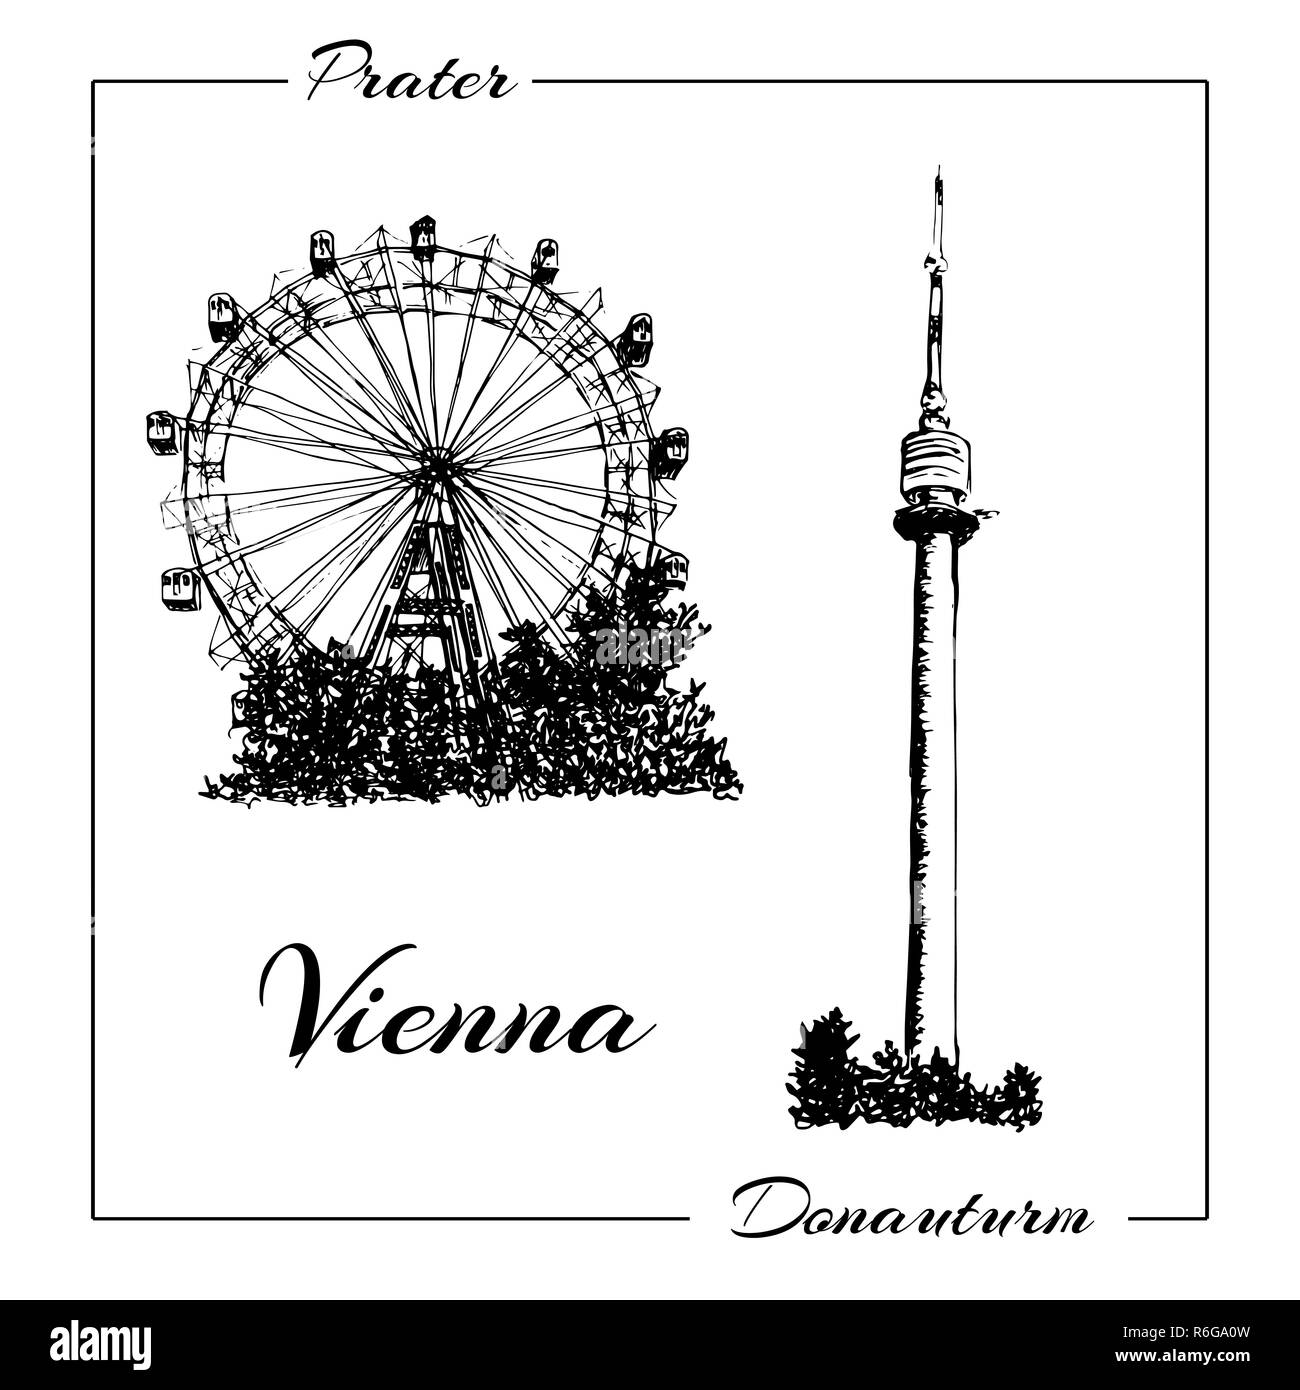 Symbole de Vienne. Vector hand drawn illustration croquis stylo encre. Donauturm, Prater Banque D'Images